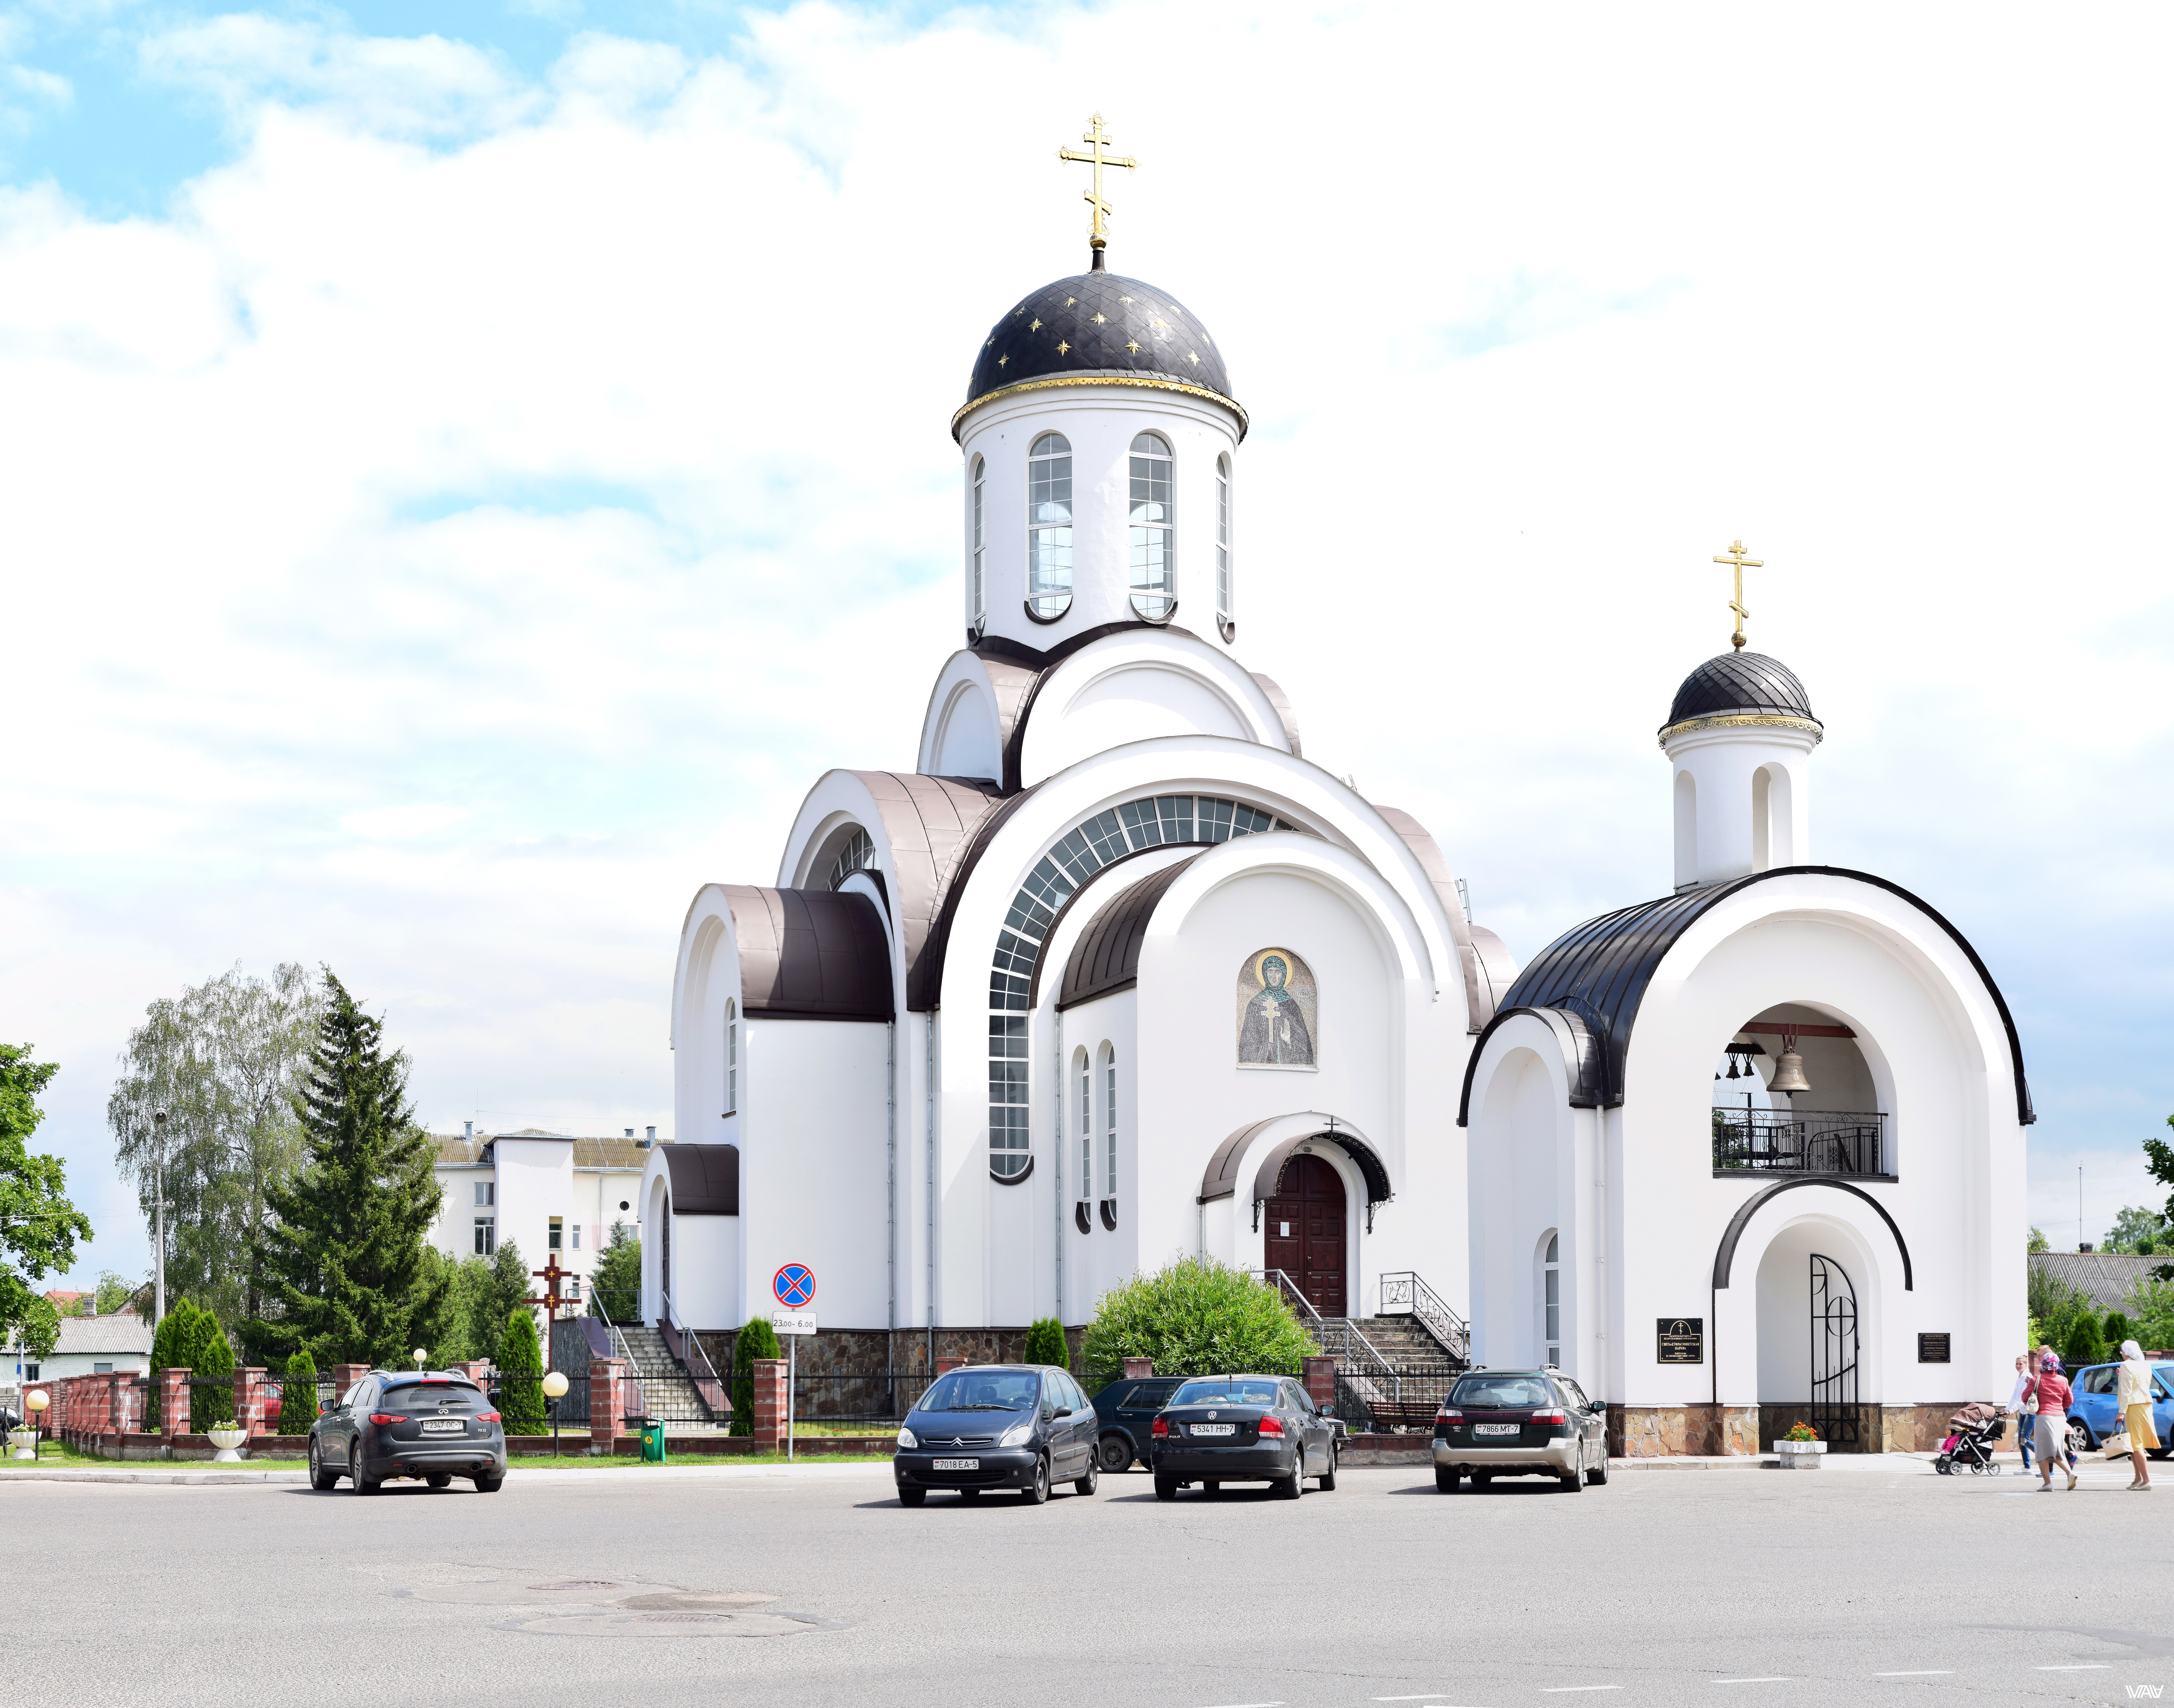 Белокаменная. Церковь Святой Евросиньи, Ивенец, Беларусь